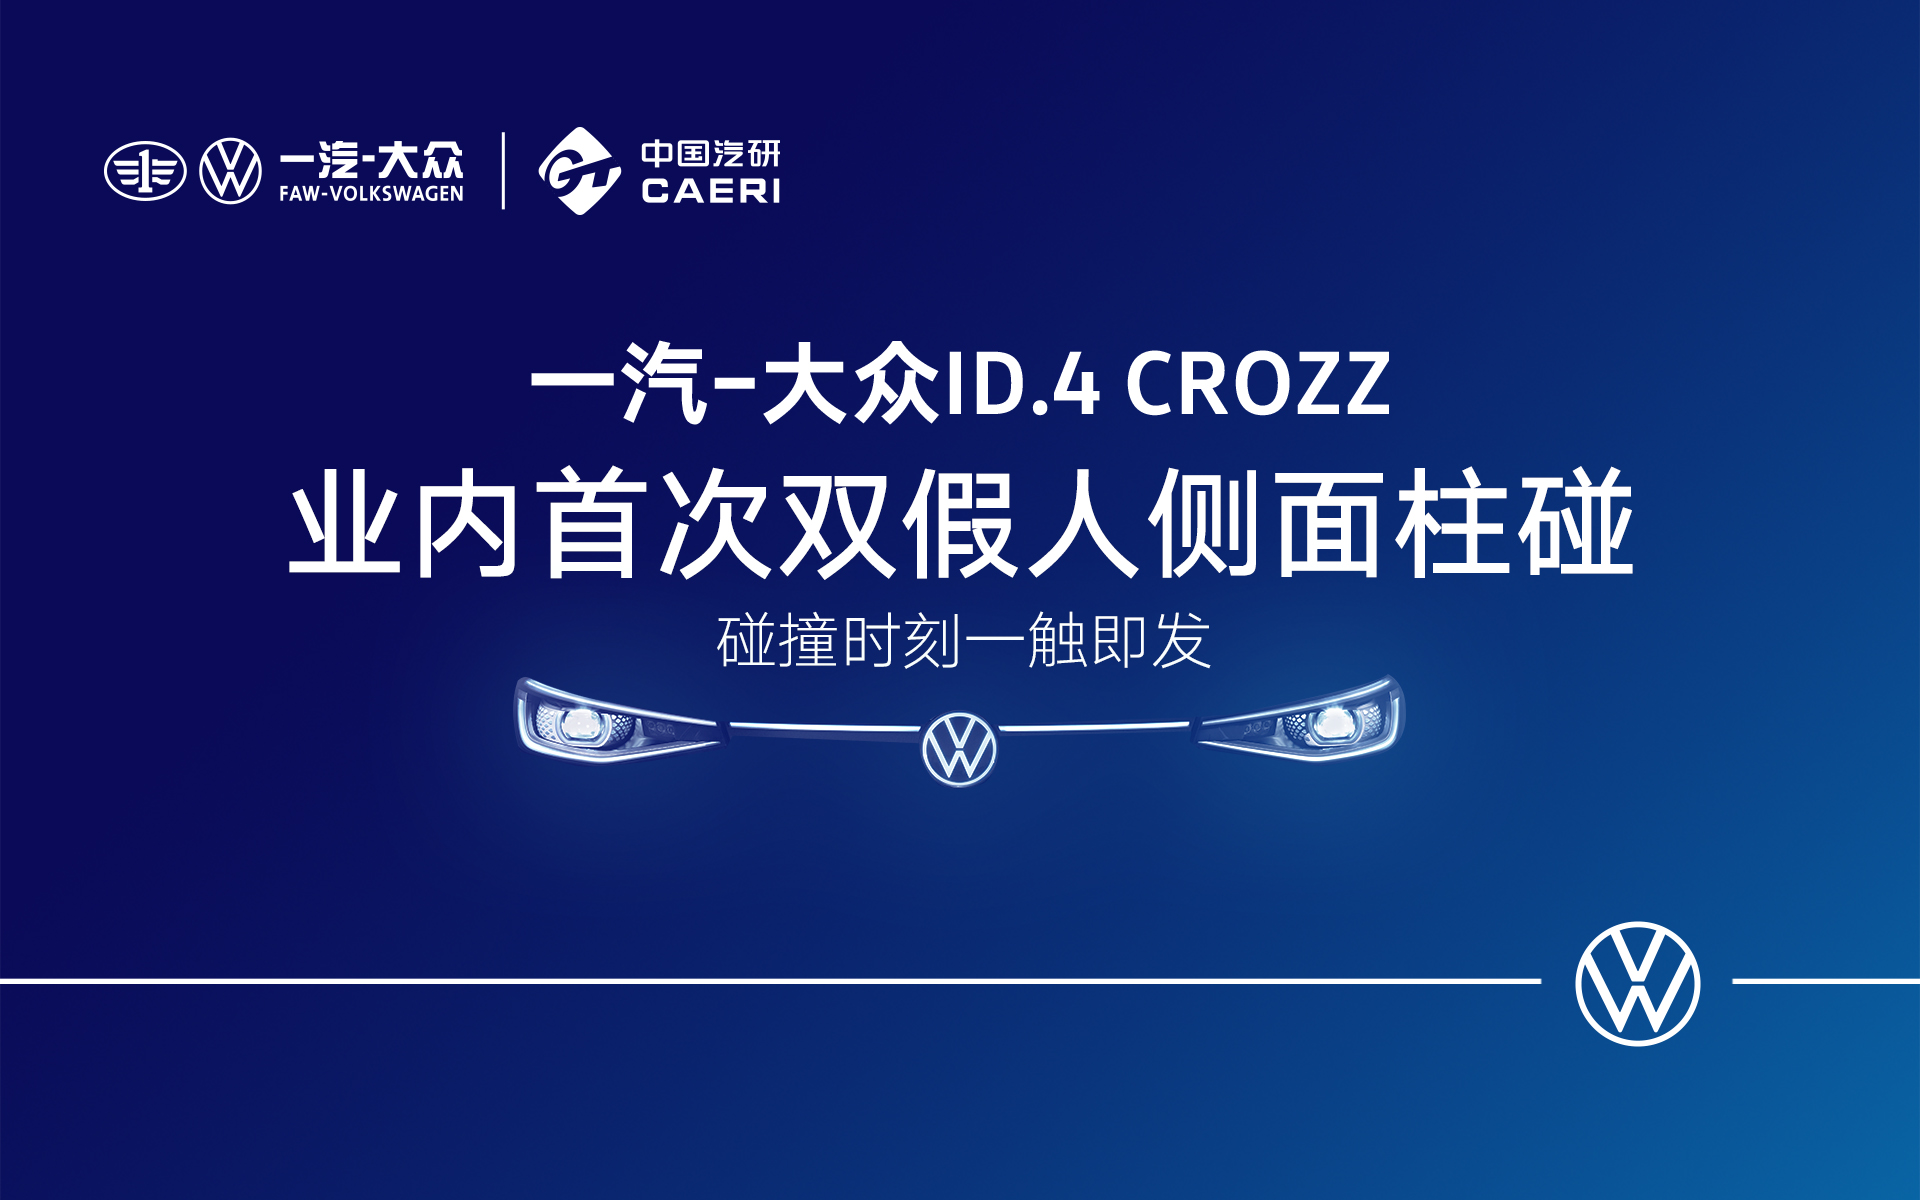 一汽-大众ID.4 CROZZ业内首次双假人侧面柱碰实验